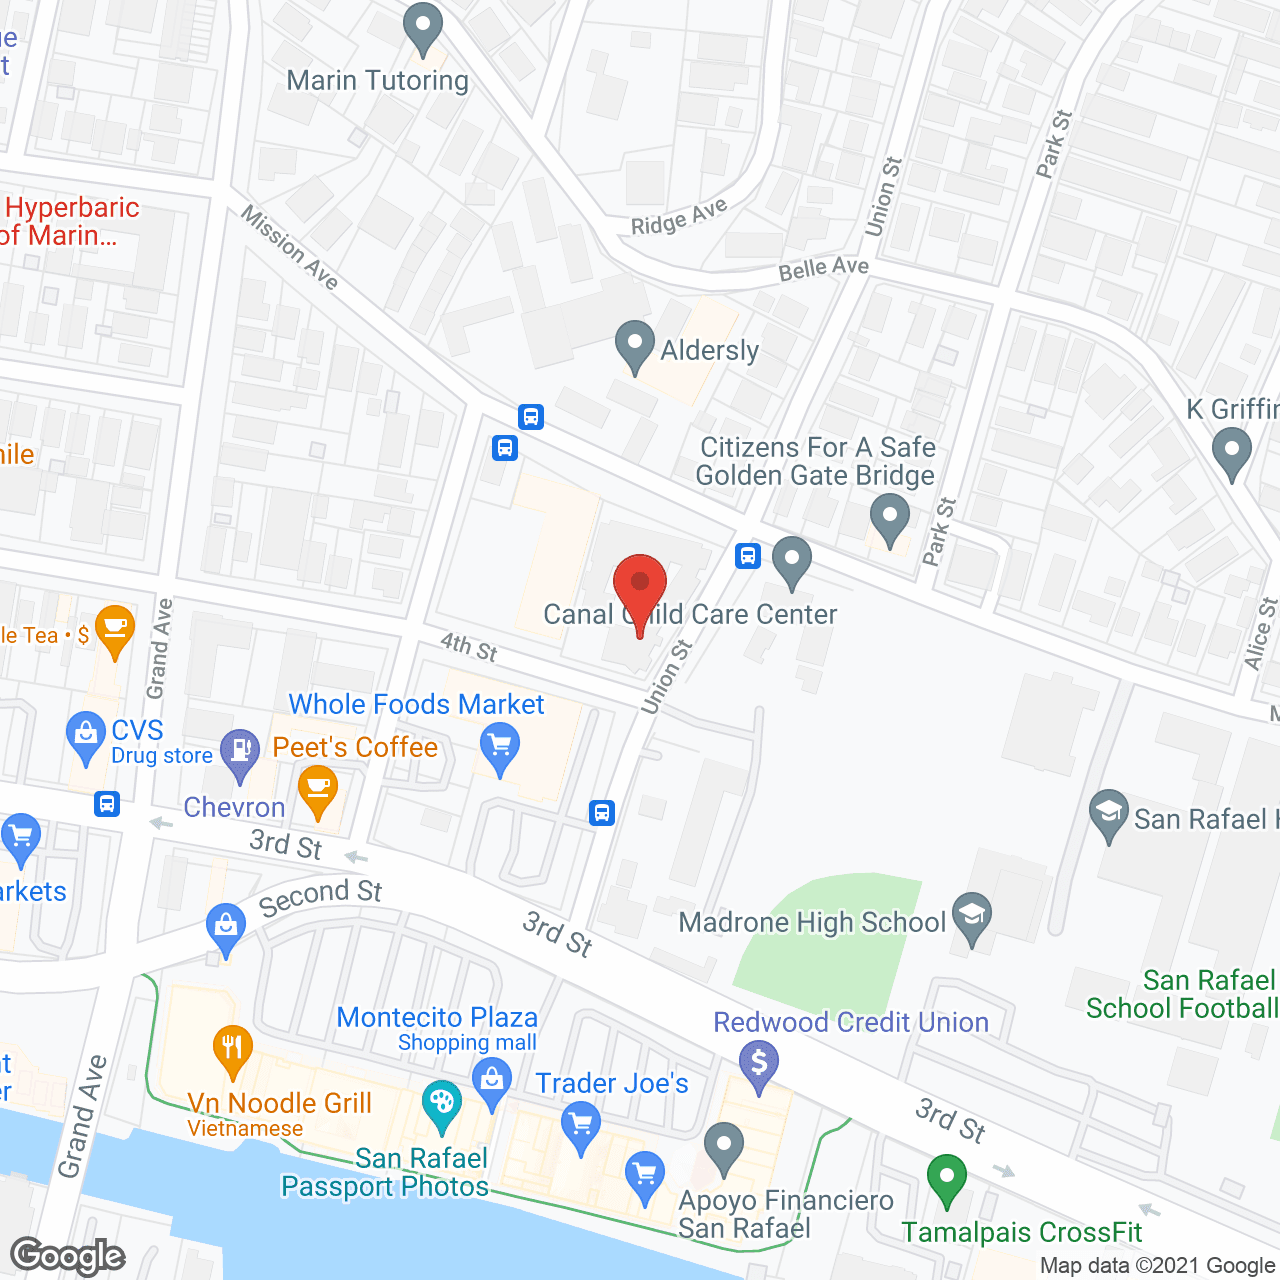 San Rafael Commons in google map